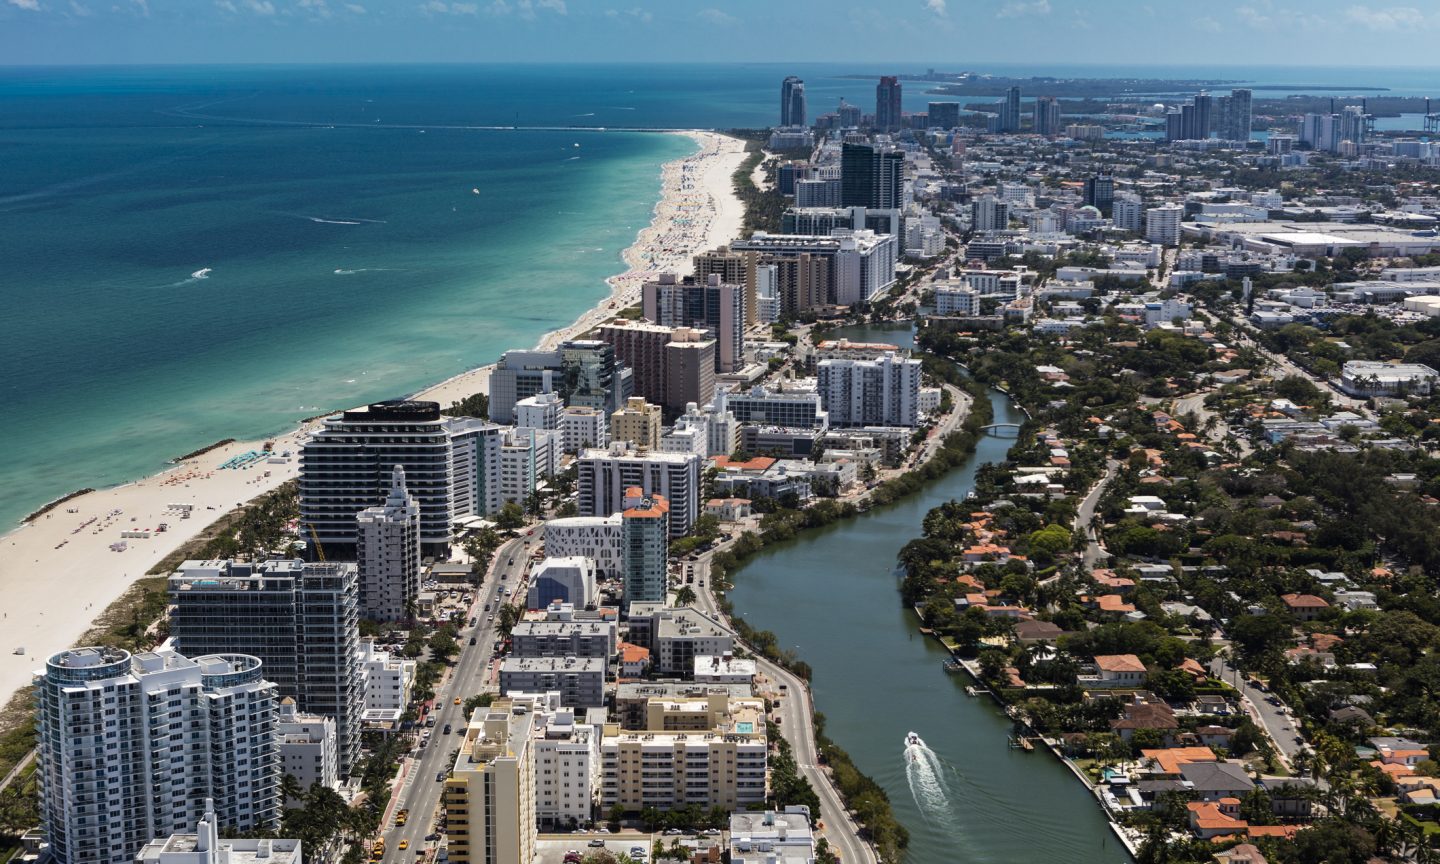 Cheapest Car Insurance in Miami, FL for 2022